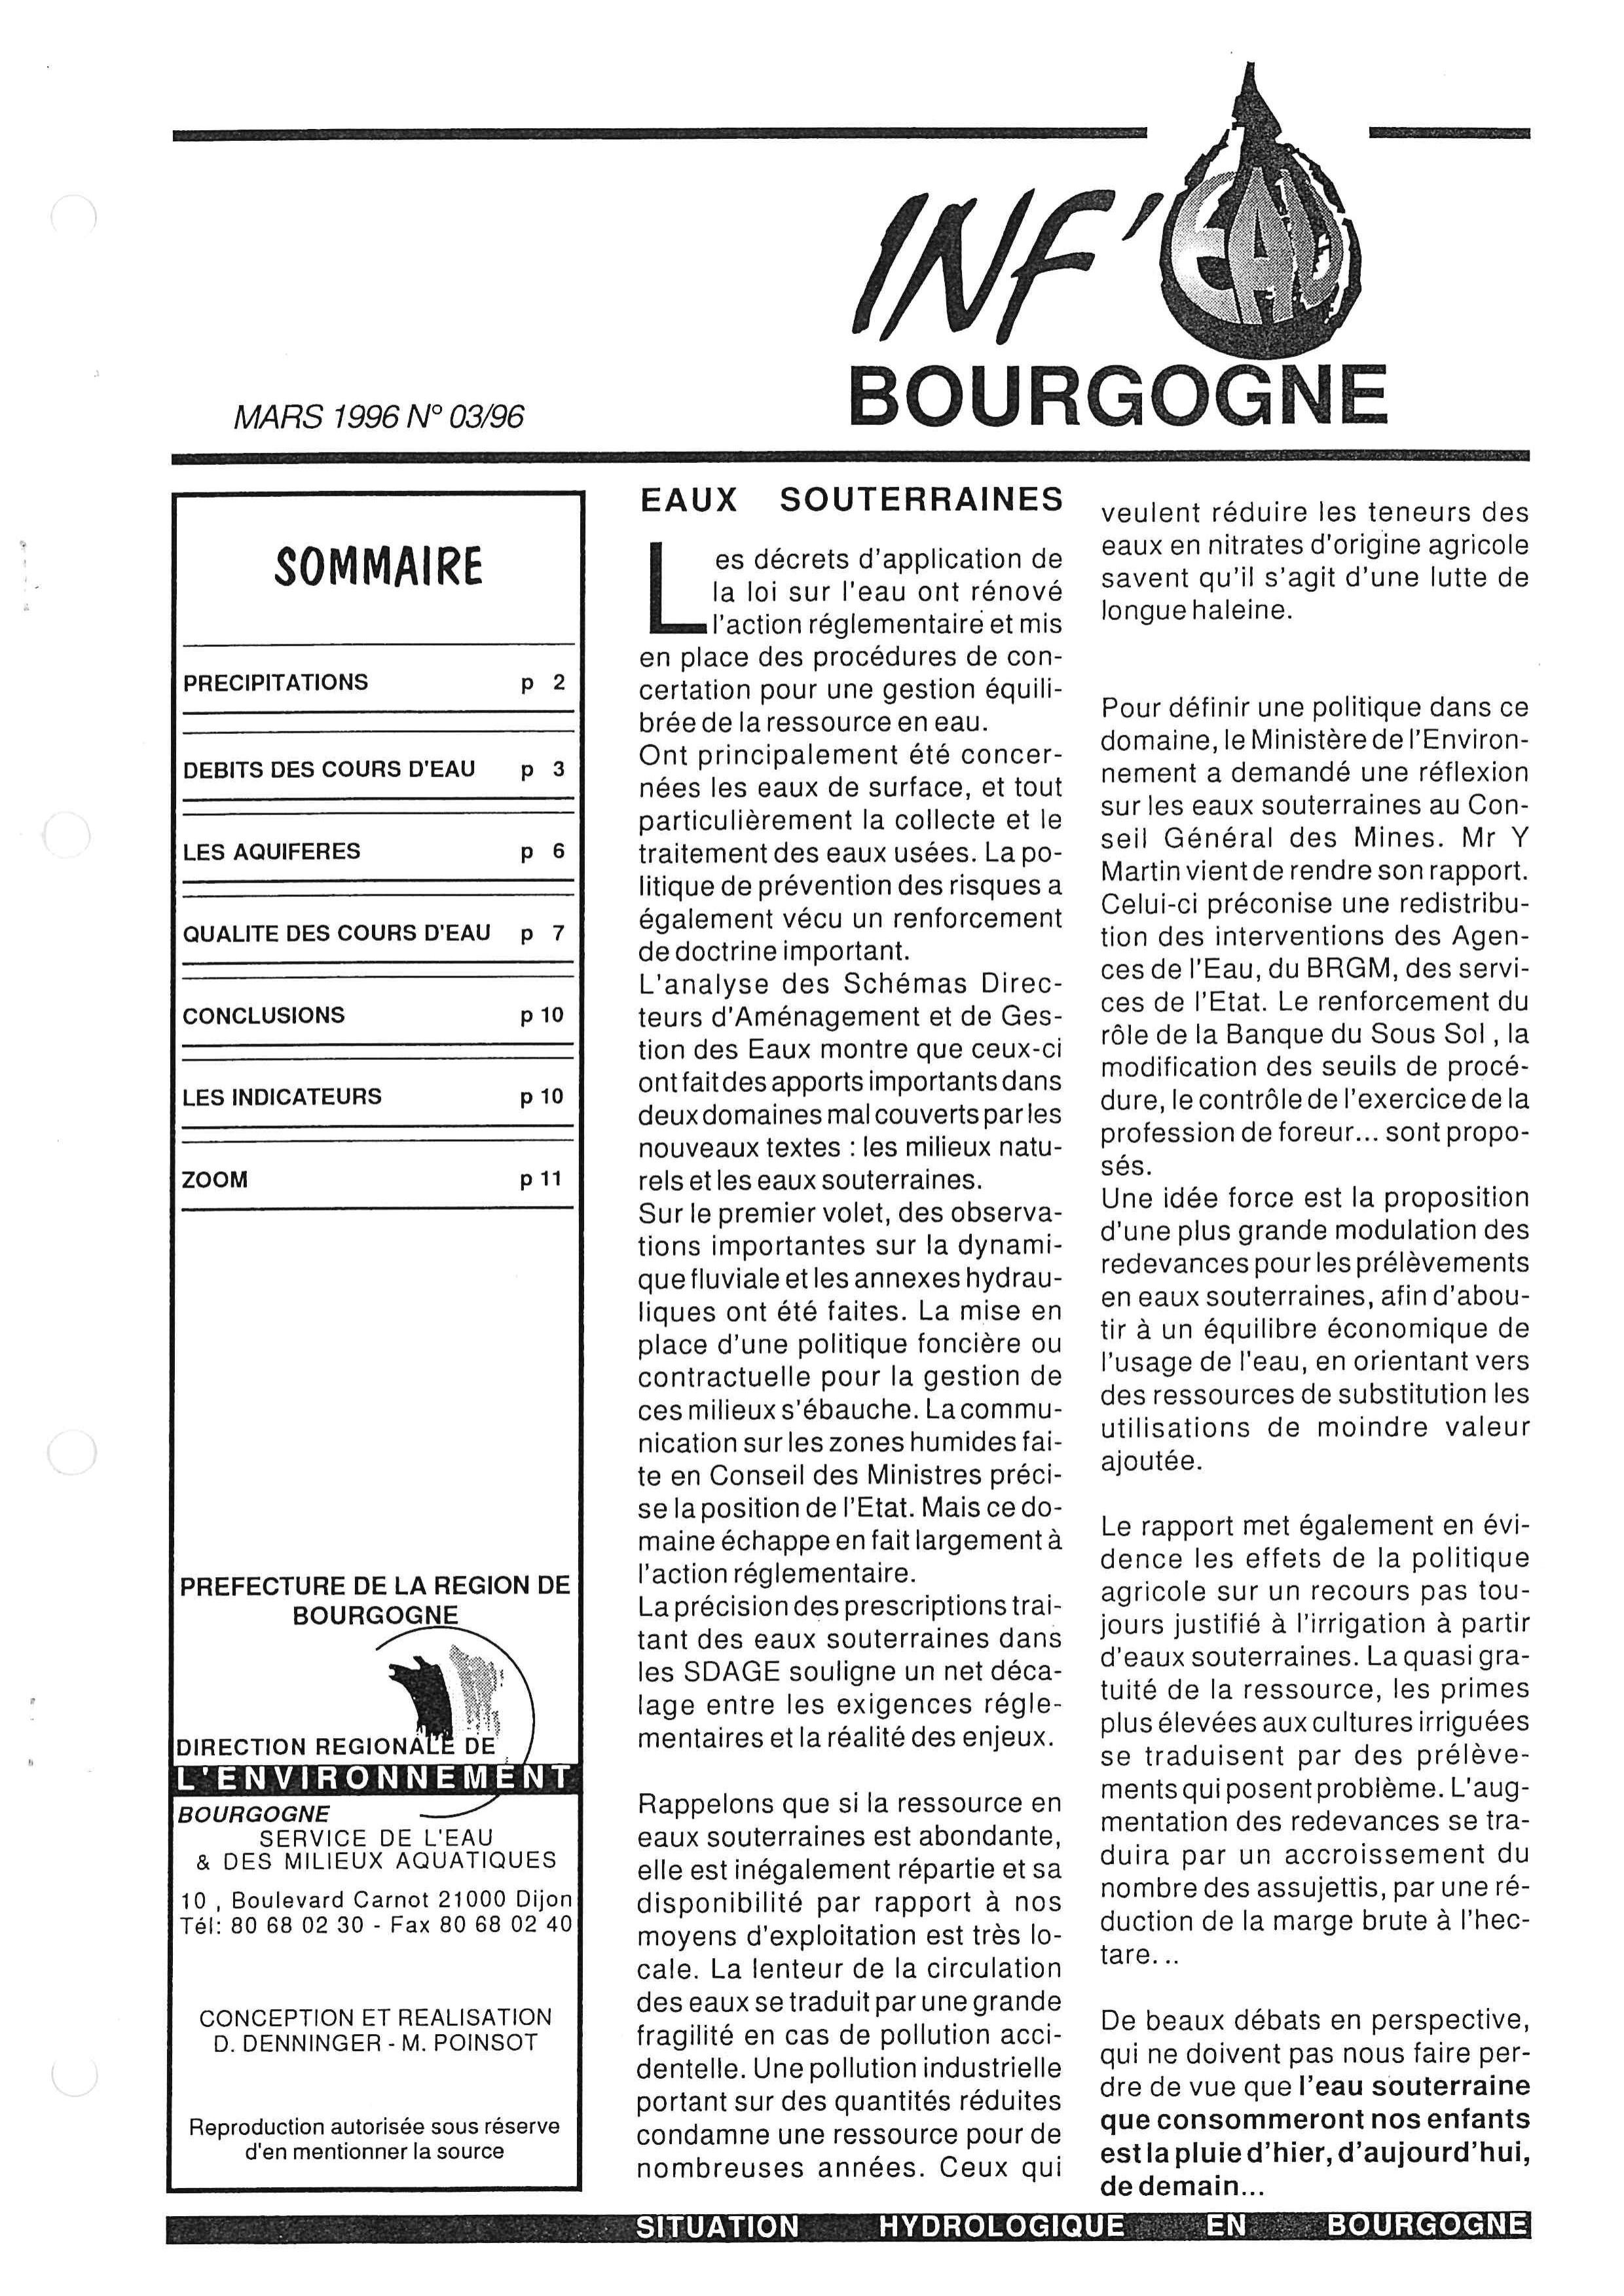 Bulletin hydrologique du mois de février 1996